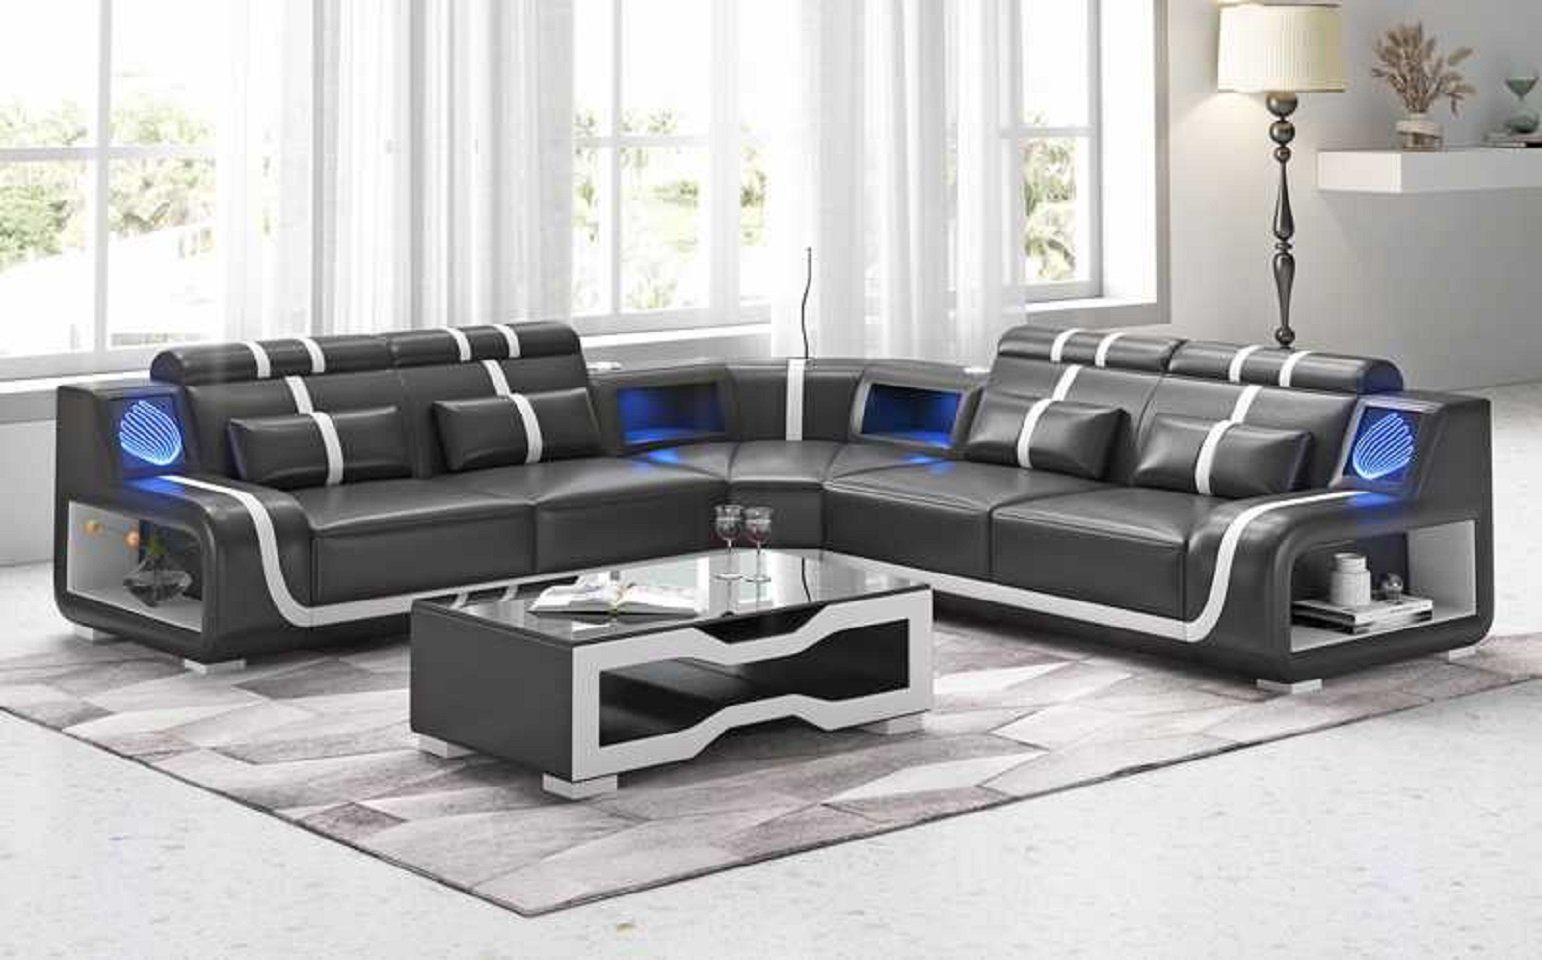 Sofa 3 Ecksofa Ecksofa JVmoebel in Modern Sofas, Teile, Luxus Couch Form L couchen Kunstleder Europe Schwarz Made